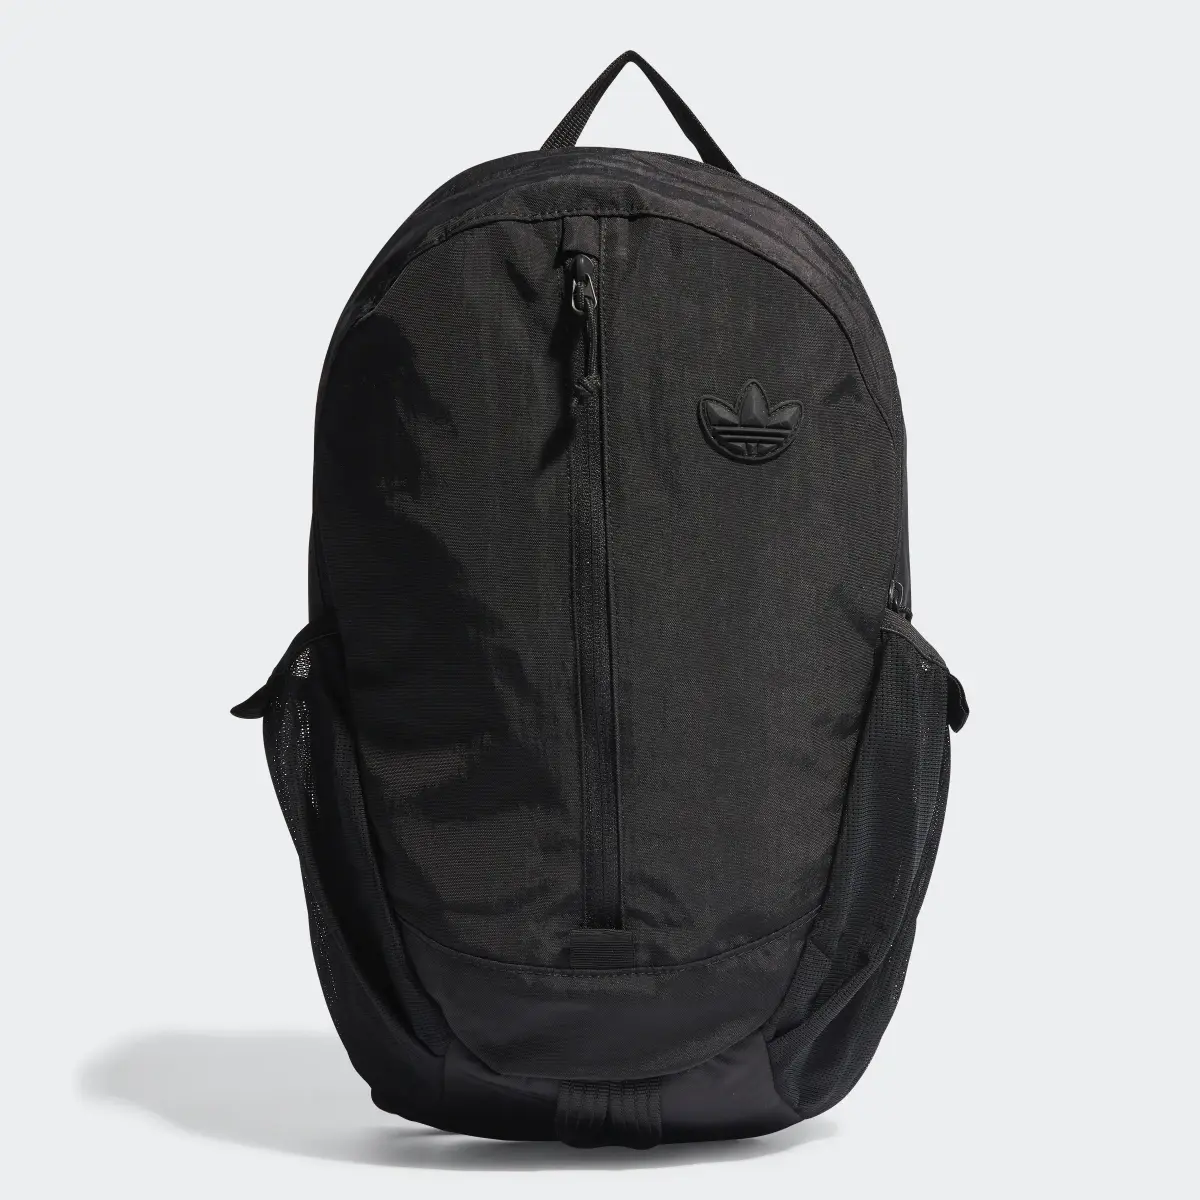 Adidas Adventure Backpack. 2